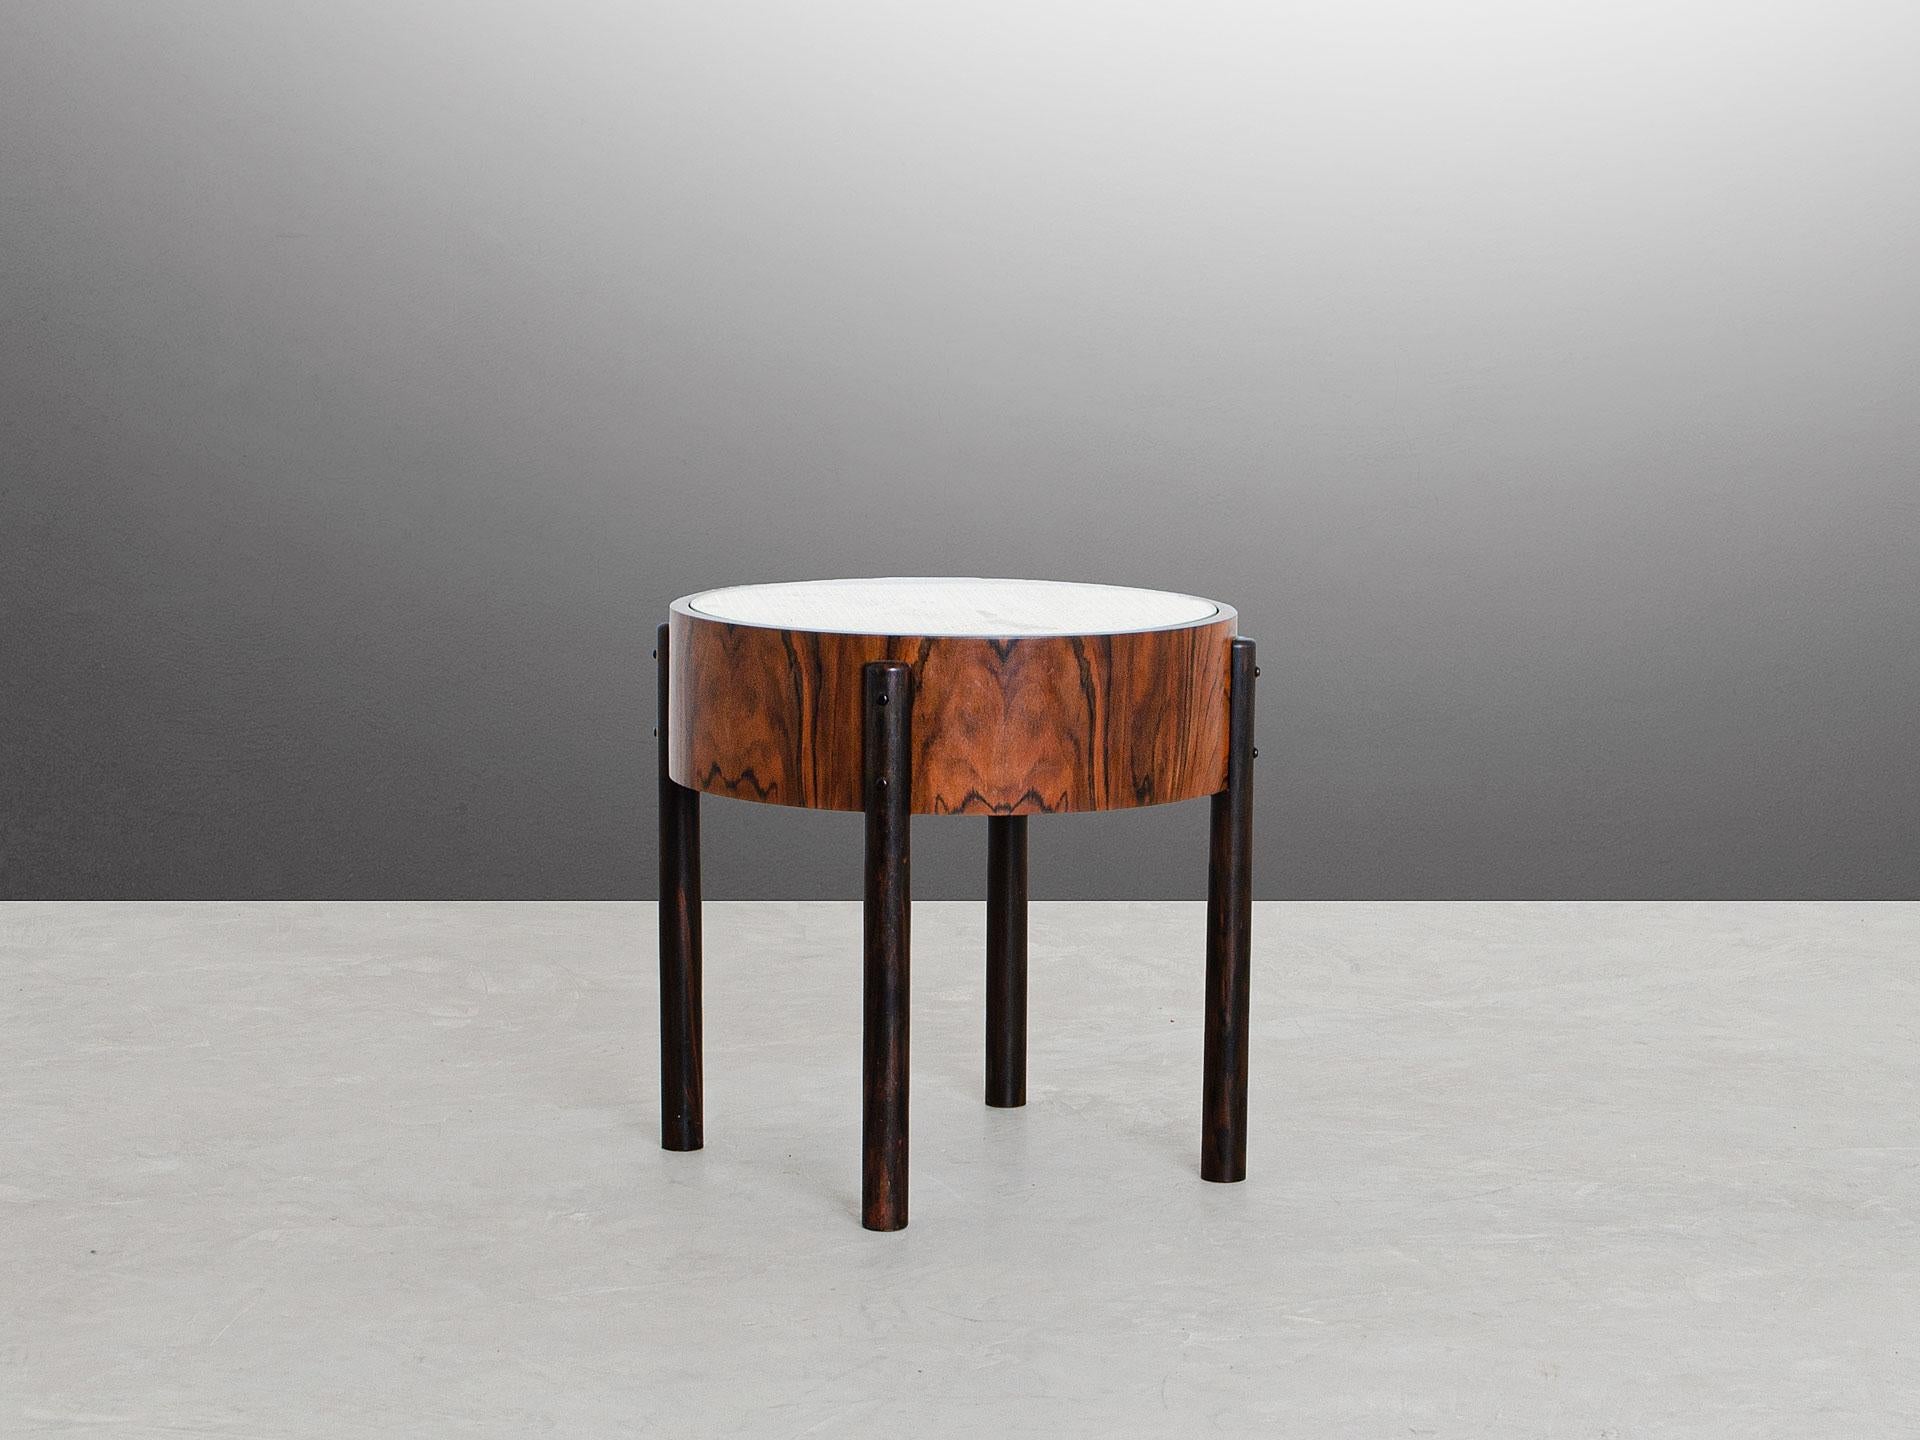 La table ronde Adi est une table d'appoint d'inspiration 60's et sa production a débuté en 2019. 
Les lignes simples du design minimaliste combinées à la rugosité des matériaux confèrent à cette pièce une qualité très particulière qui nous rappelle